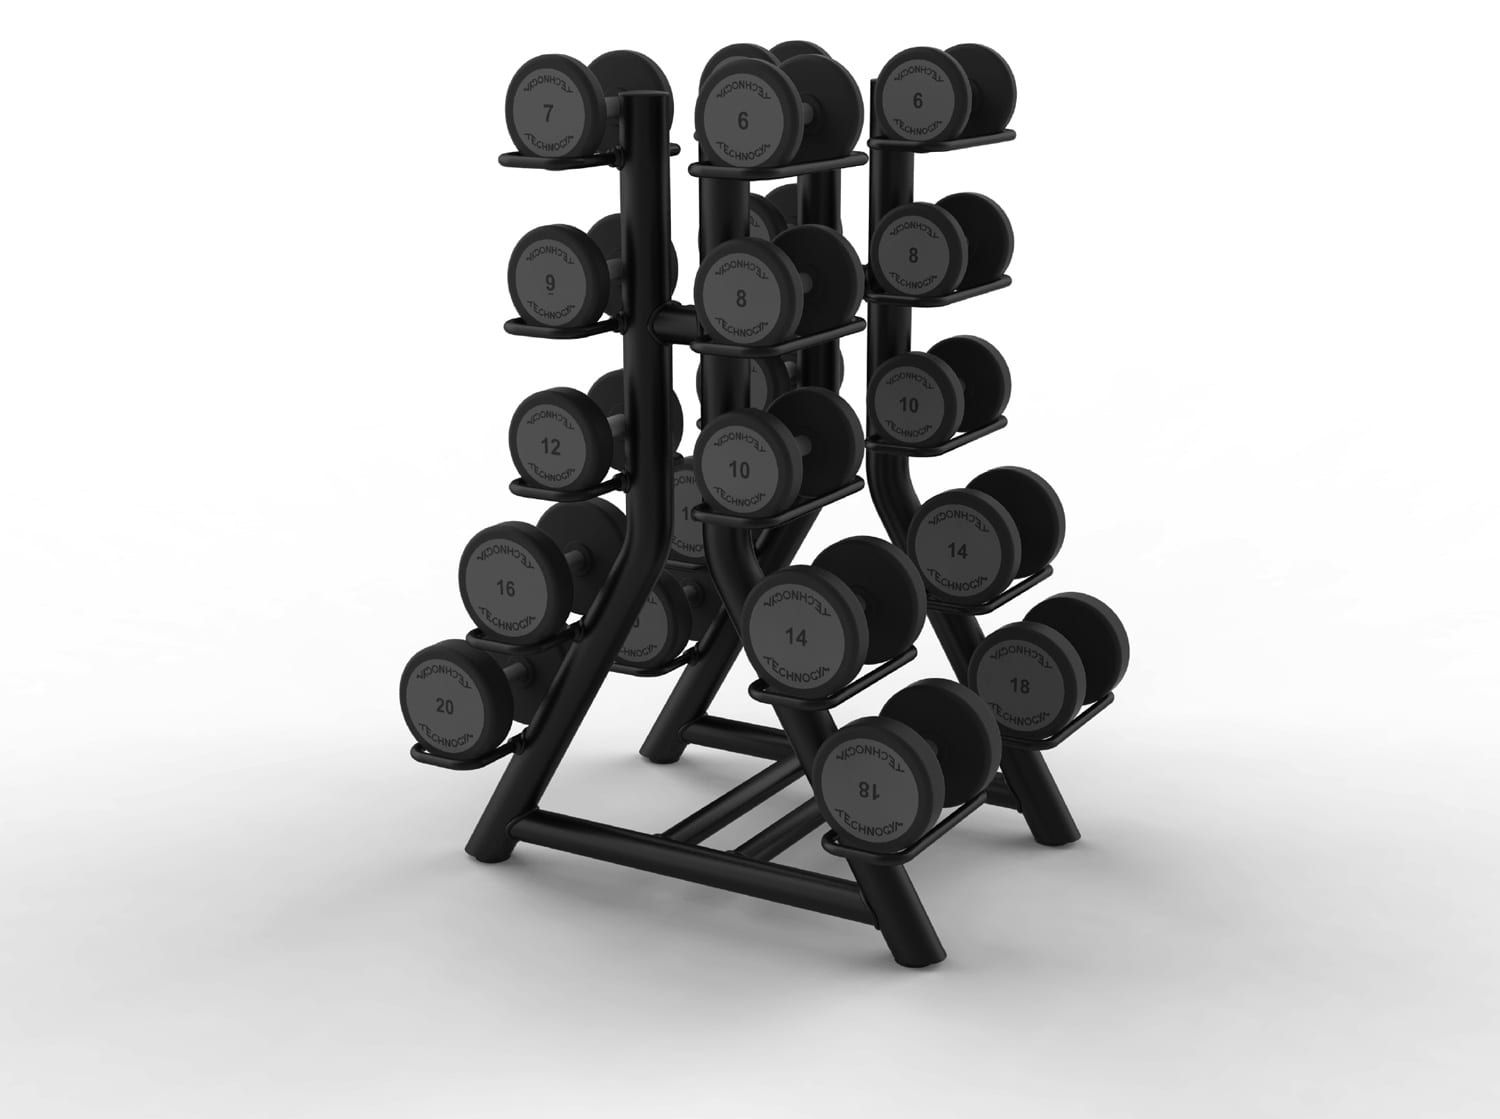 Vertical Dumbbell Rack – vertikal hantelstativ